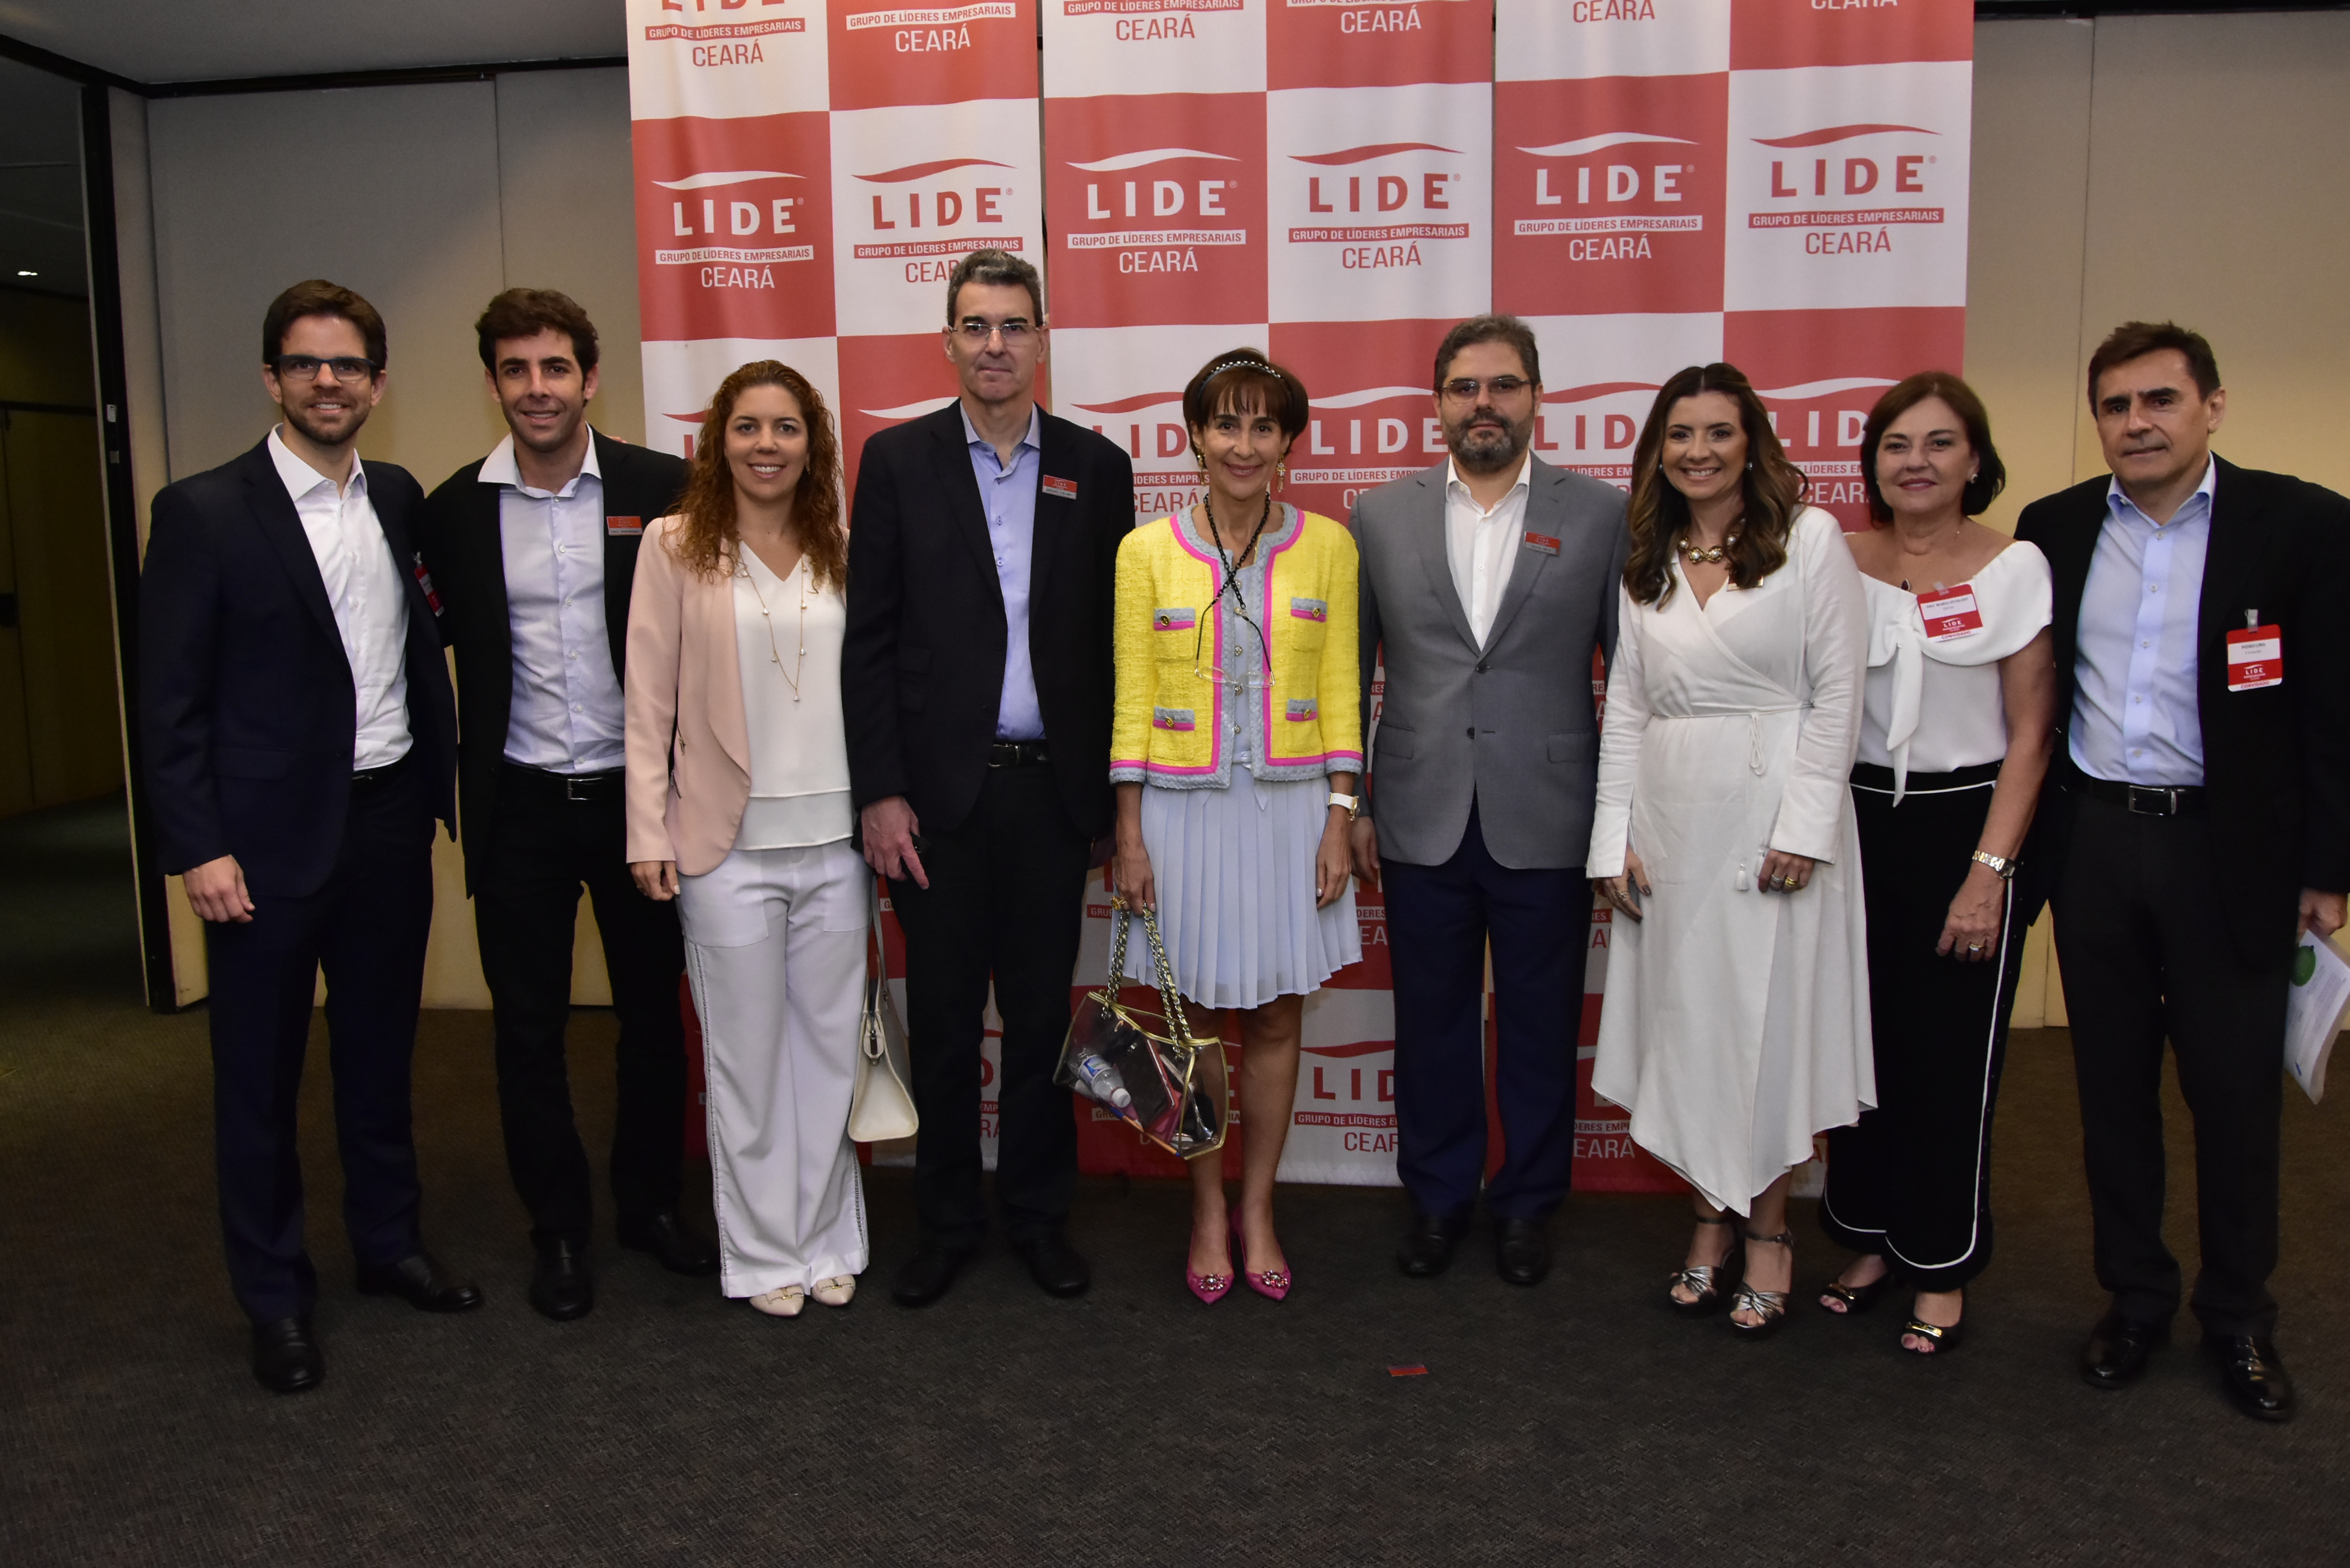 Viviane Senna participa de debate promovido pelo LIDE Ceará sobre educação